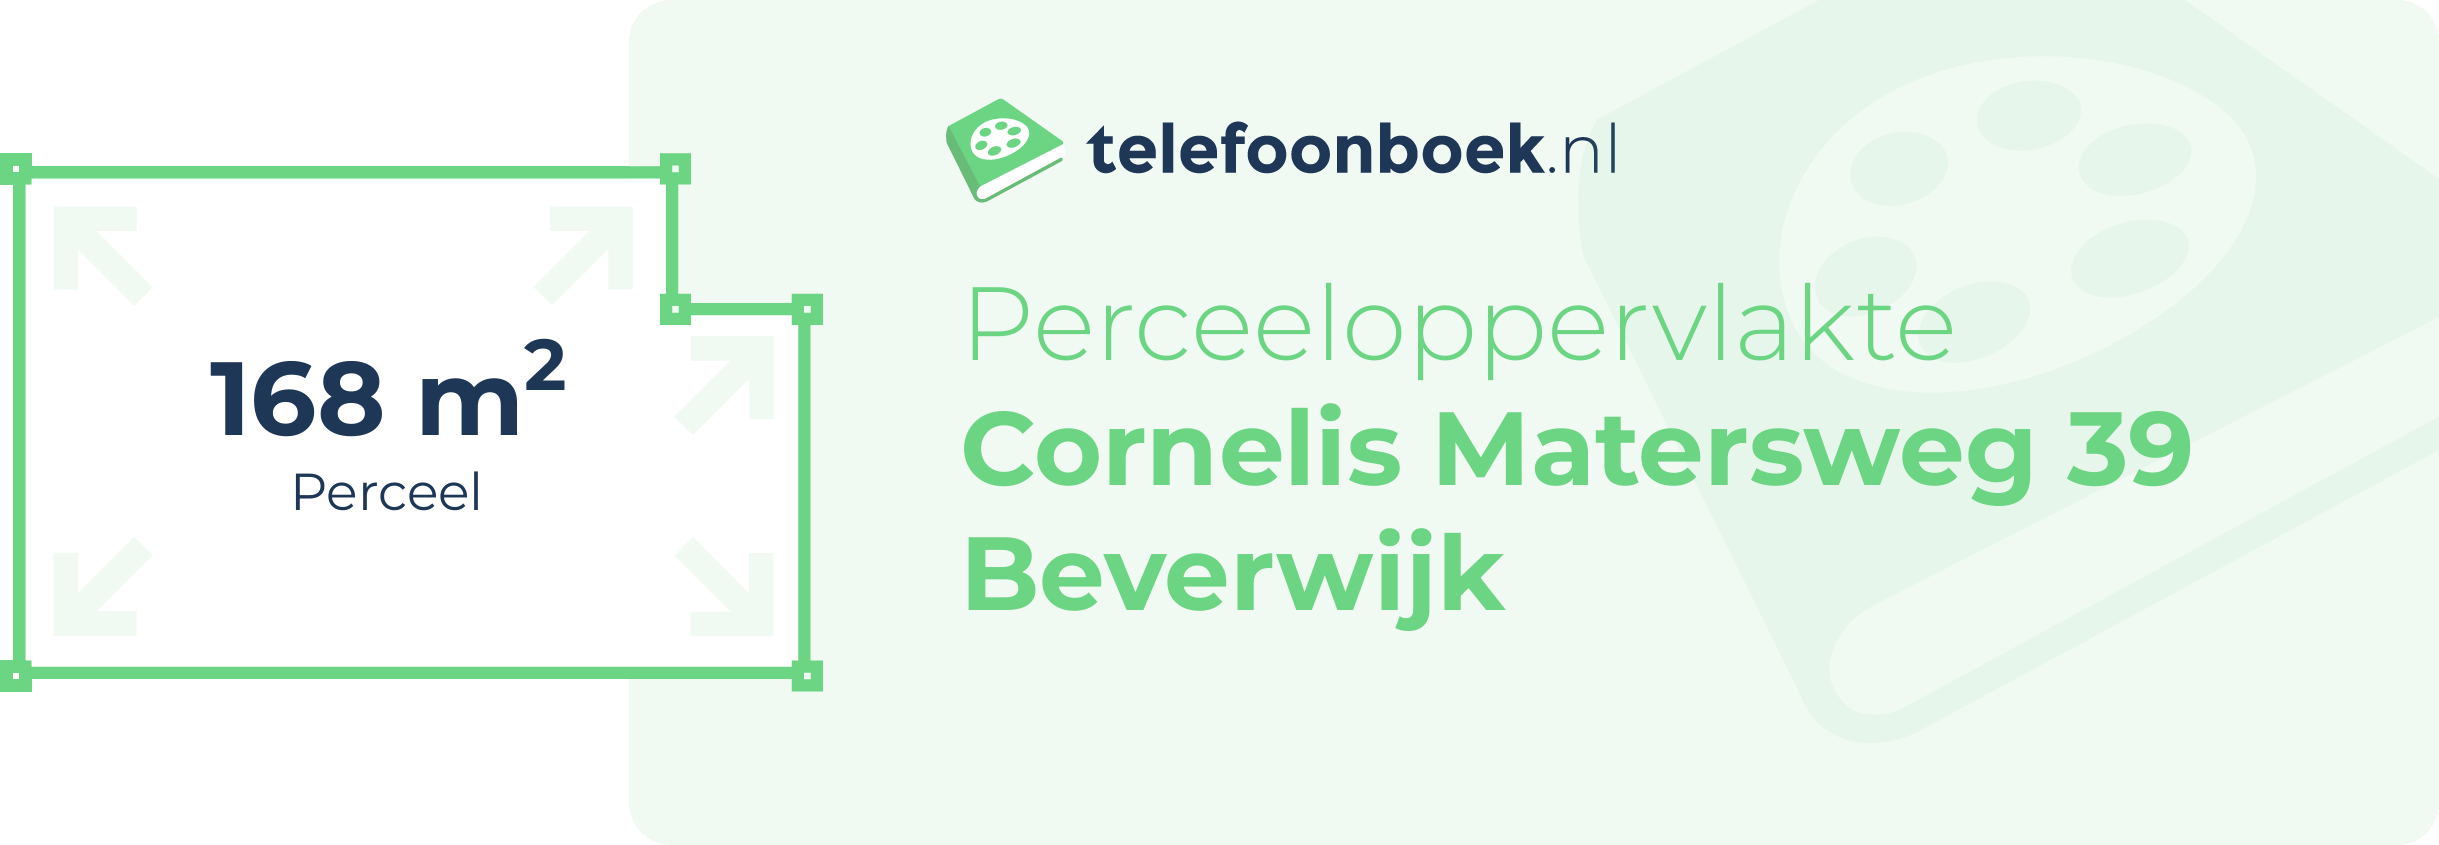 Perceeloppervlakte Cornelis Matersweg 39 Beverwijk